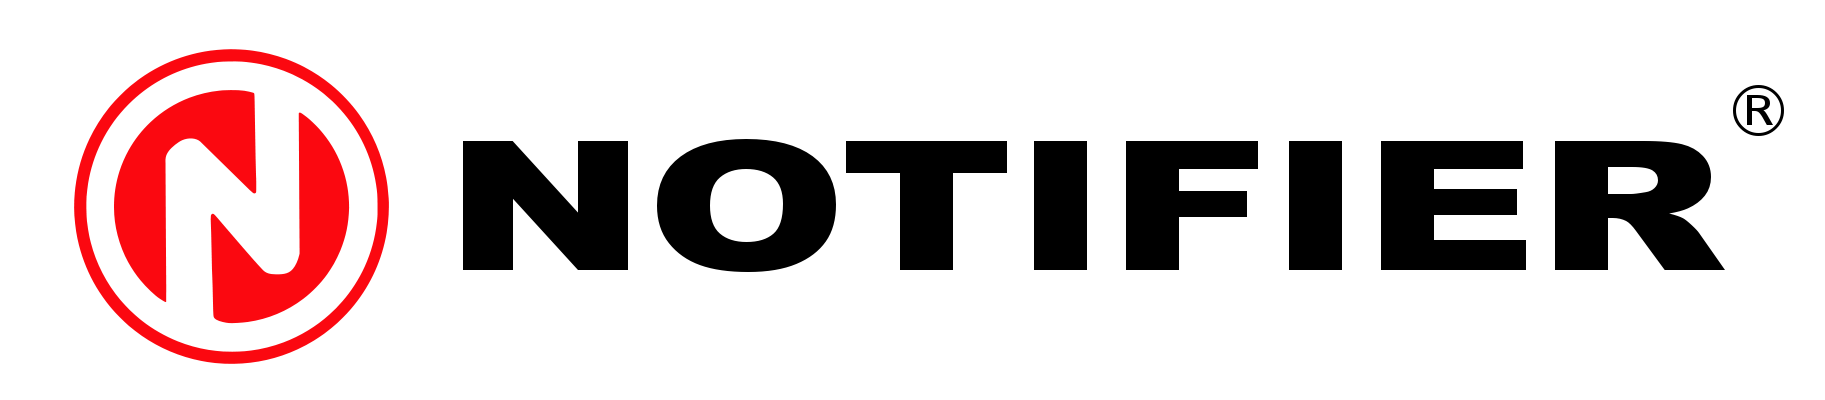 NOTIFIER Logo photo - 1